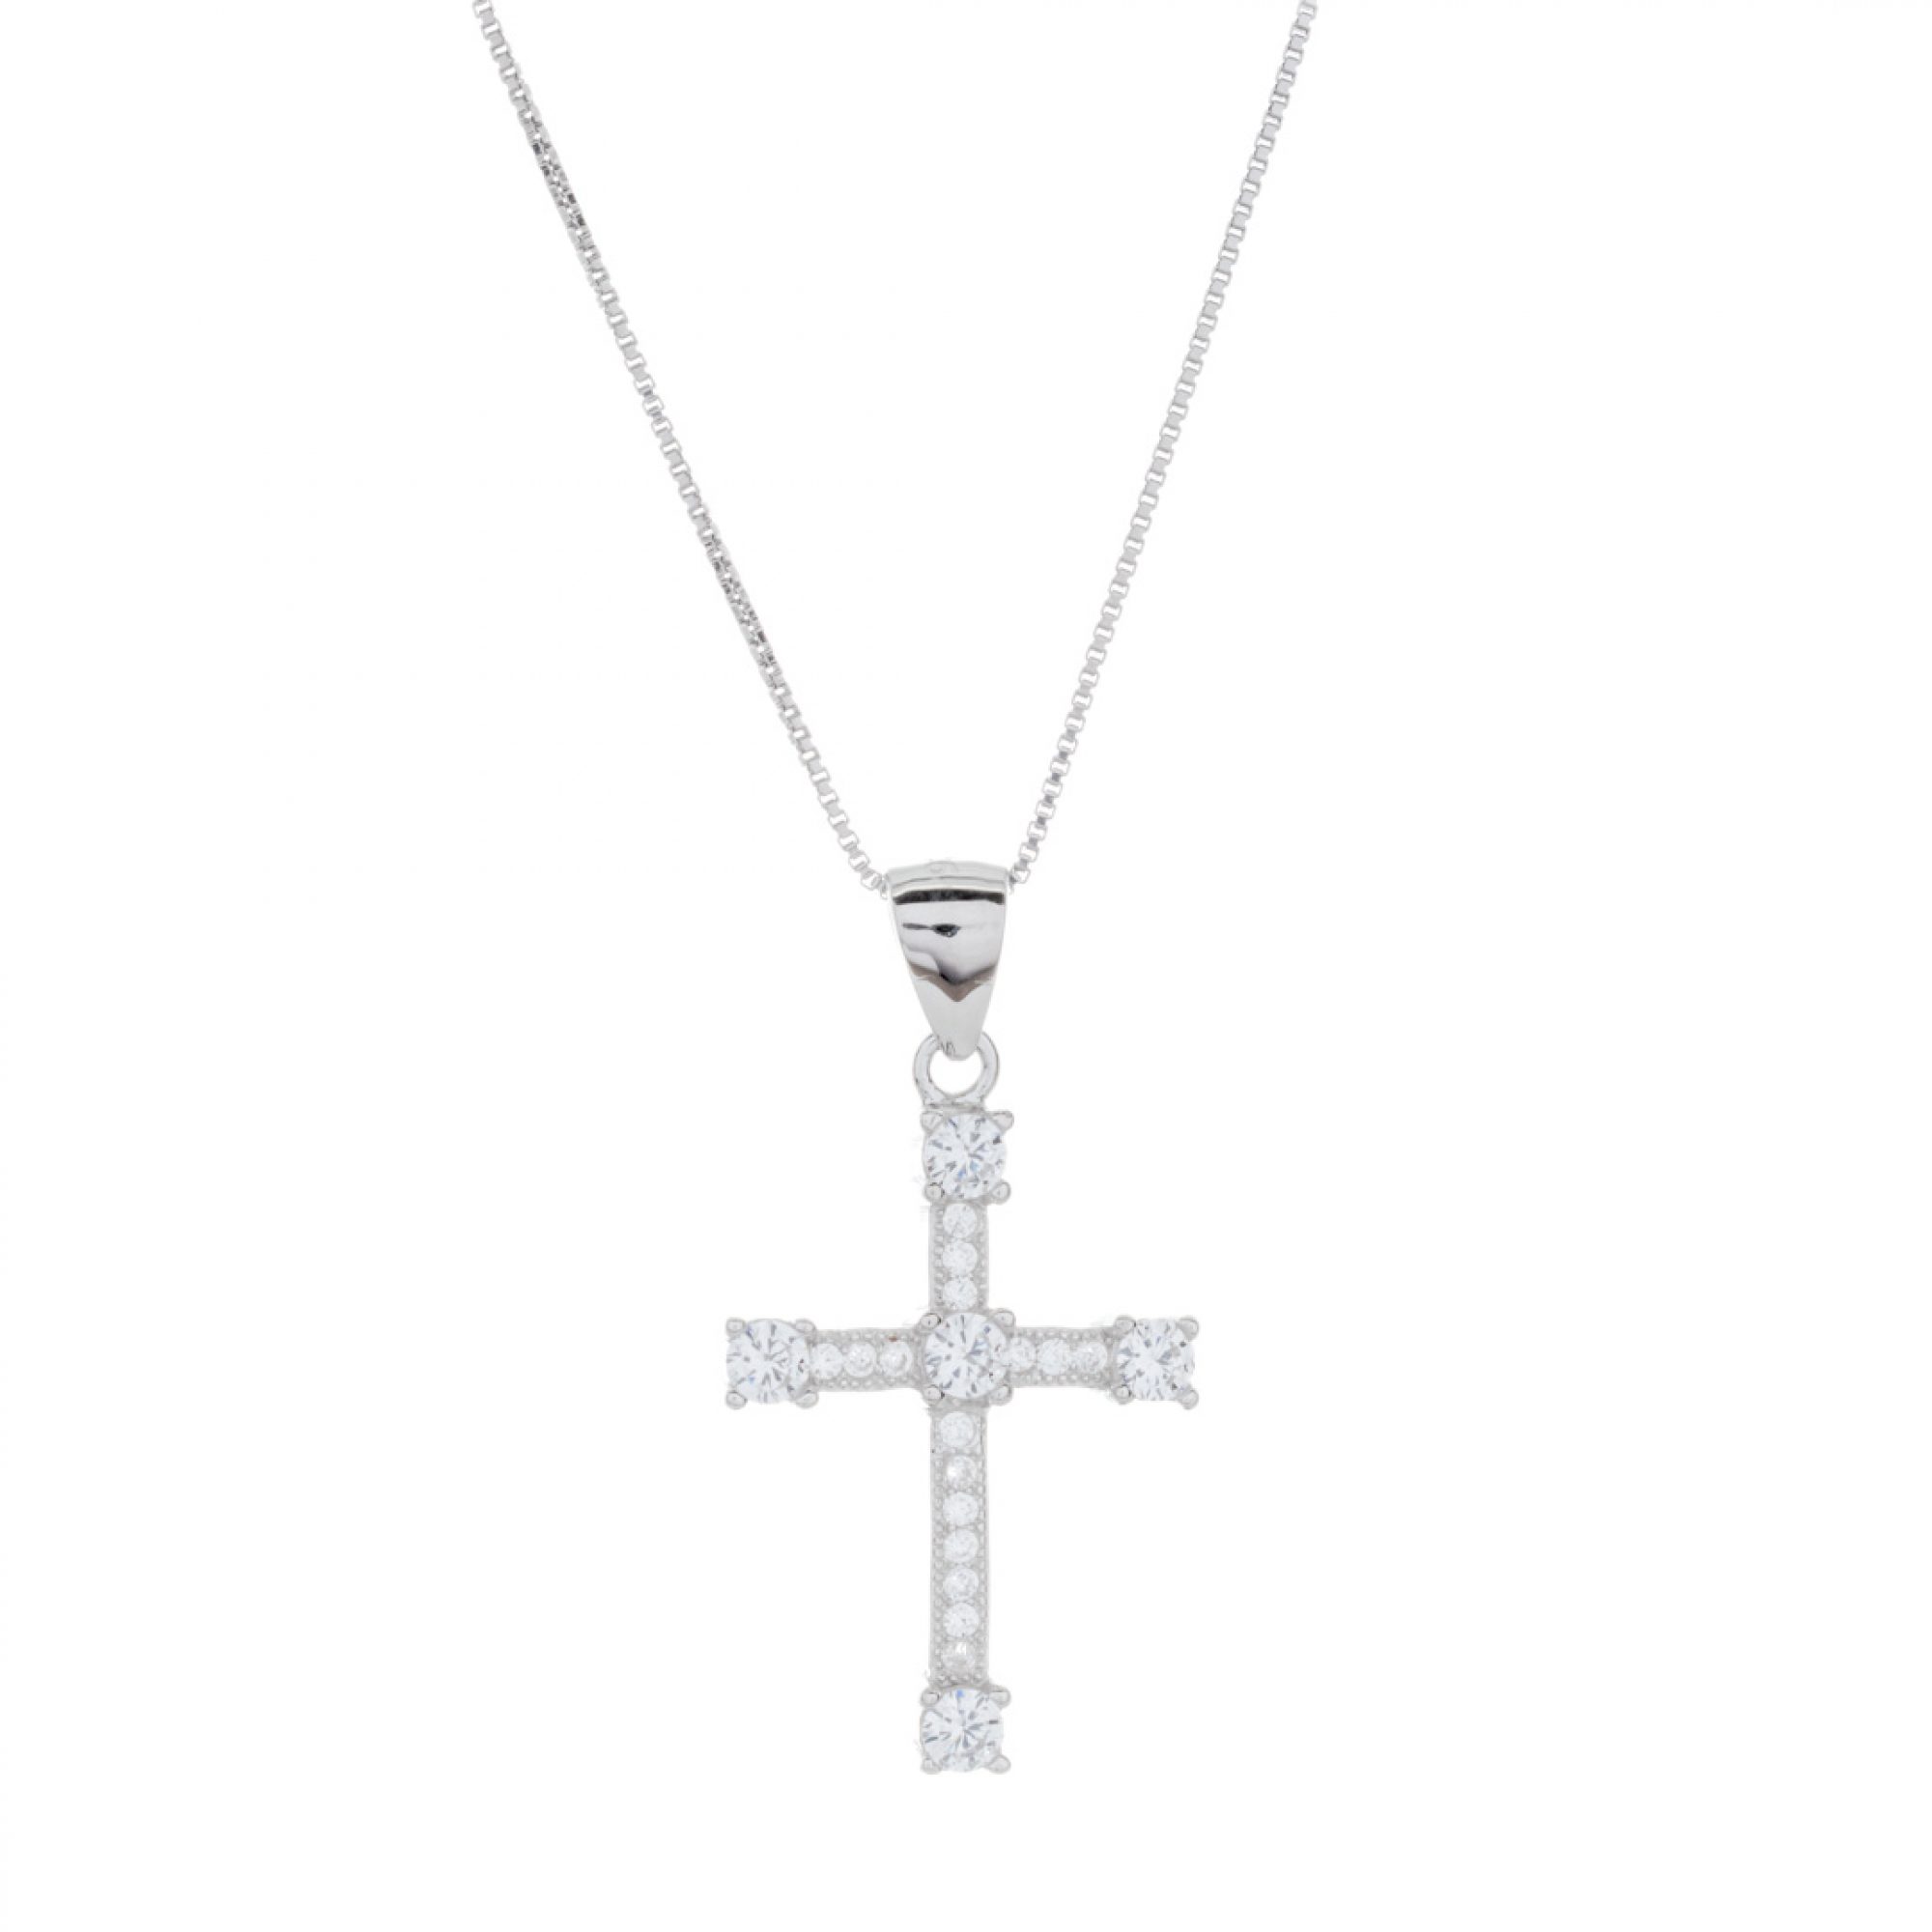 Cross necklace with zircon stones